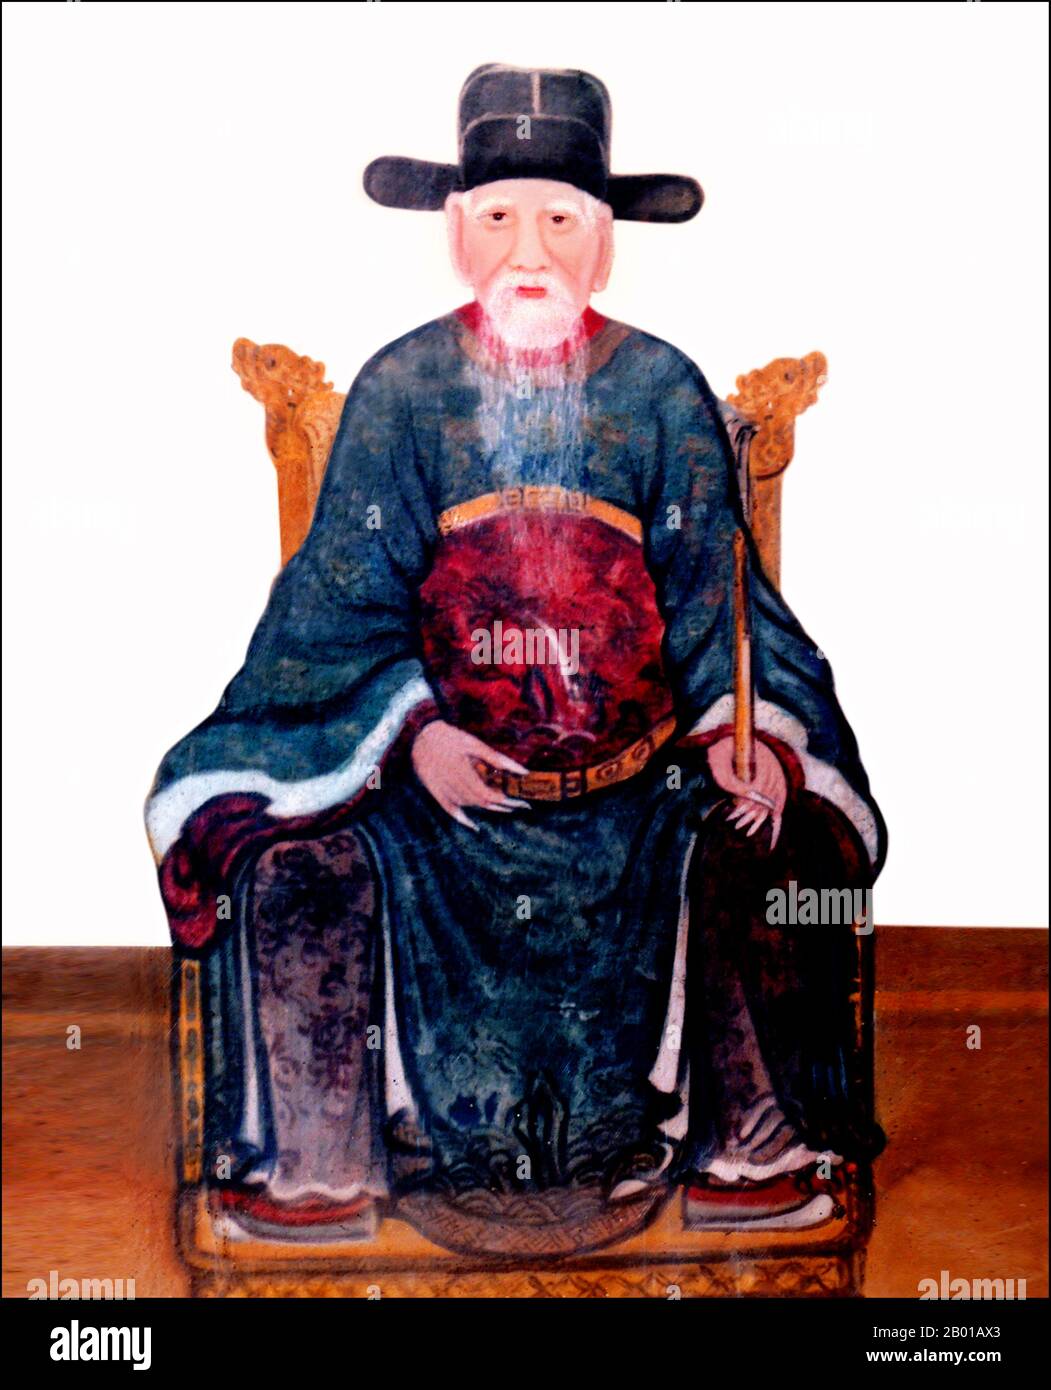 Vietnam : Nguyen Trai (1380-1442), poète, patriote et conseiller de l'empereur le Loi (r.1428-1433), peinture du 16th siècle. Nguyễn Trãi, également connu sous son nom de plume Ức Trai, était un illustre érudit confucianiste vietnamien, un poète reconnu, un politicien qualifié et un maître tacticien. Il a parfois été attribué pour être capable d'actes presque miraculeux ou mythiques dans sa capacité désignée comme un ami proche et conseiller principal de Lê Lợi, le roi-héros du Vietnam, qui a lutté pour libérer le pays de la domination chinoise. Banque D'Images